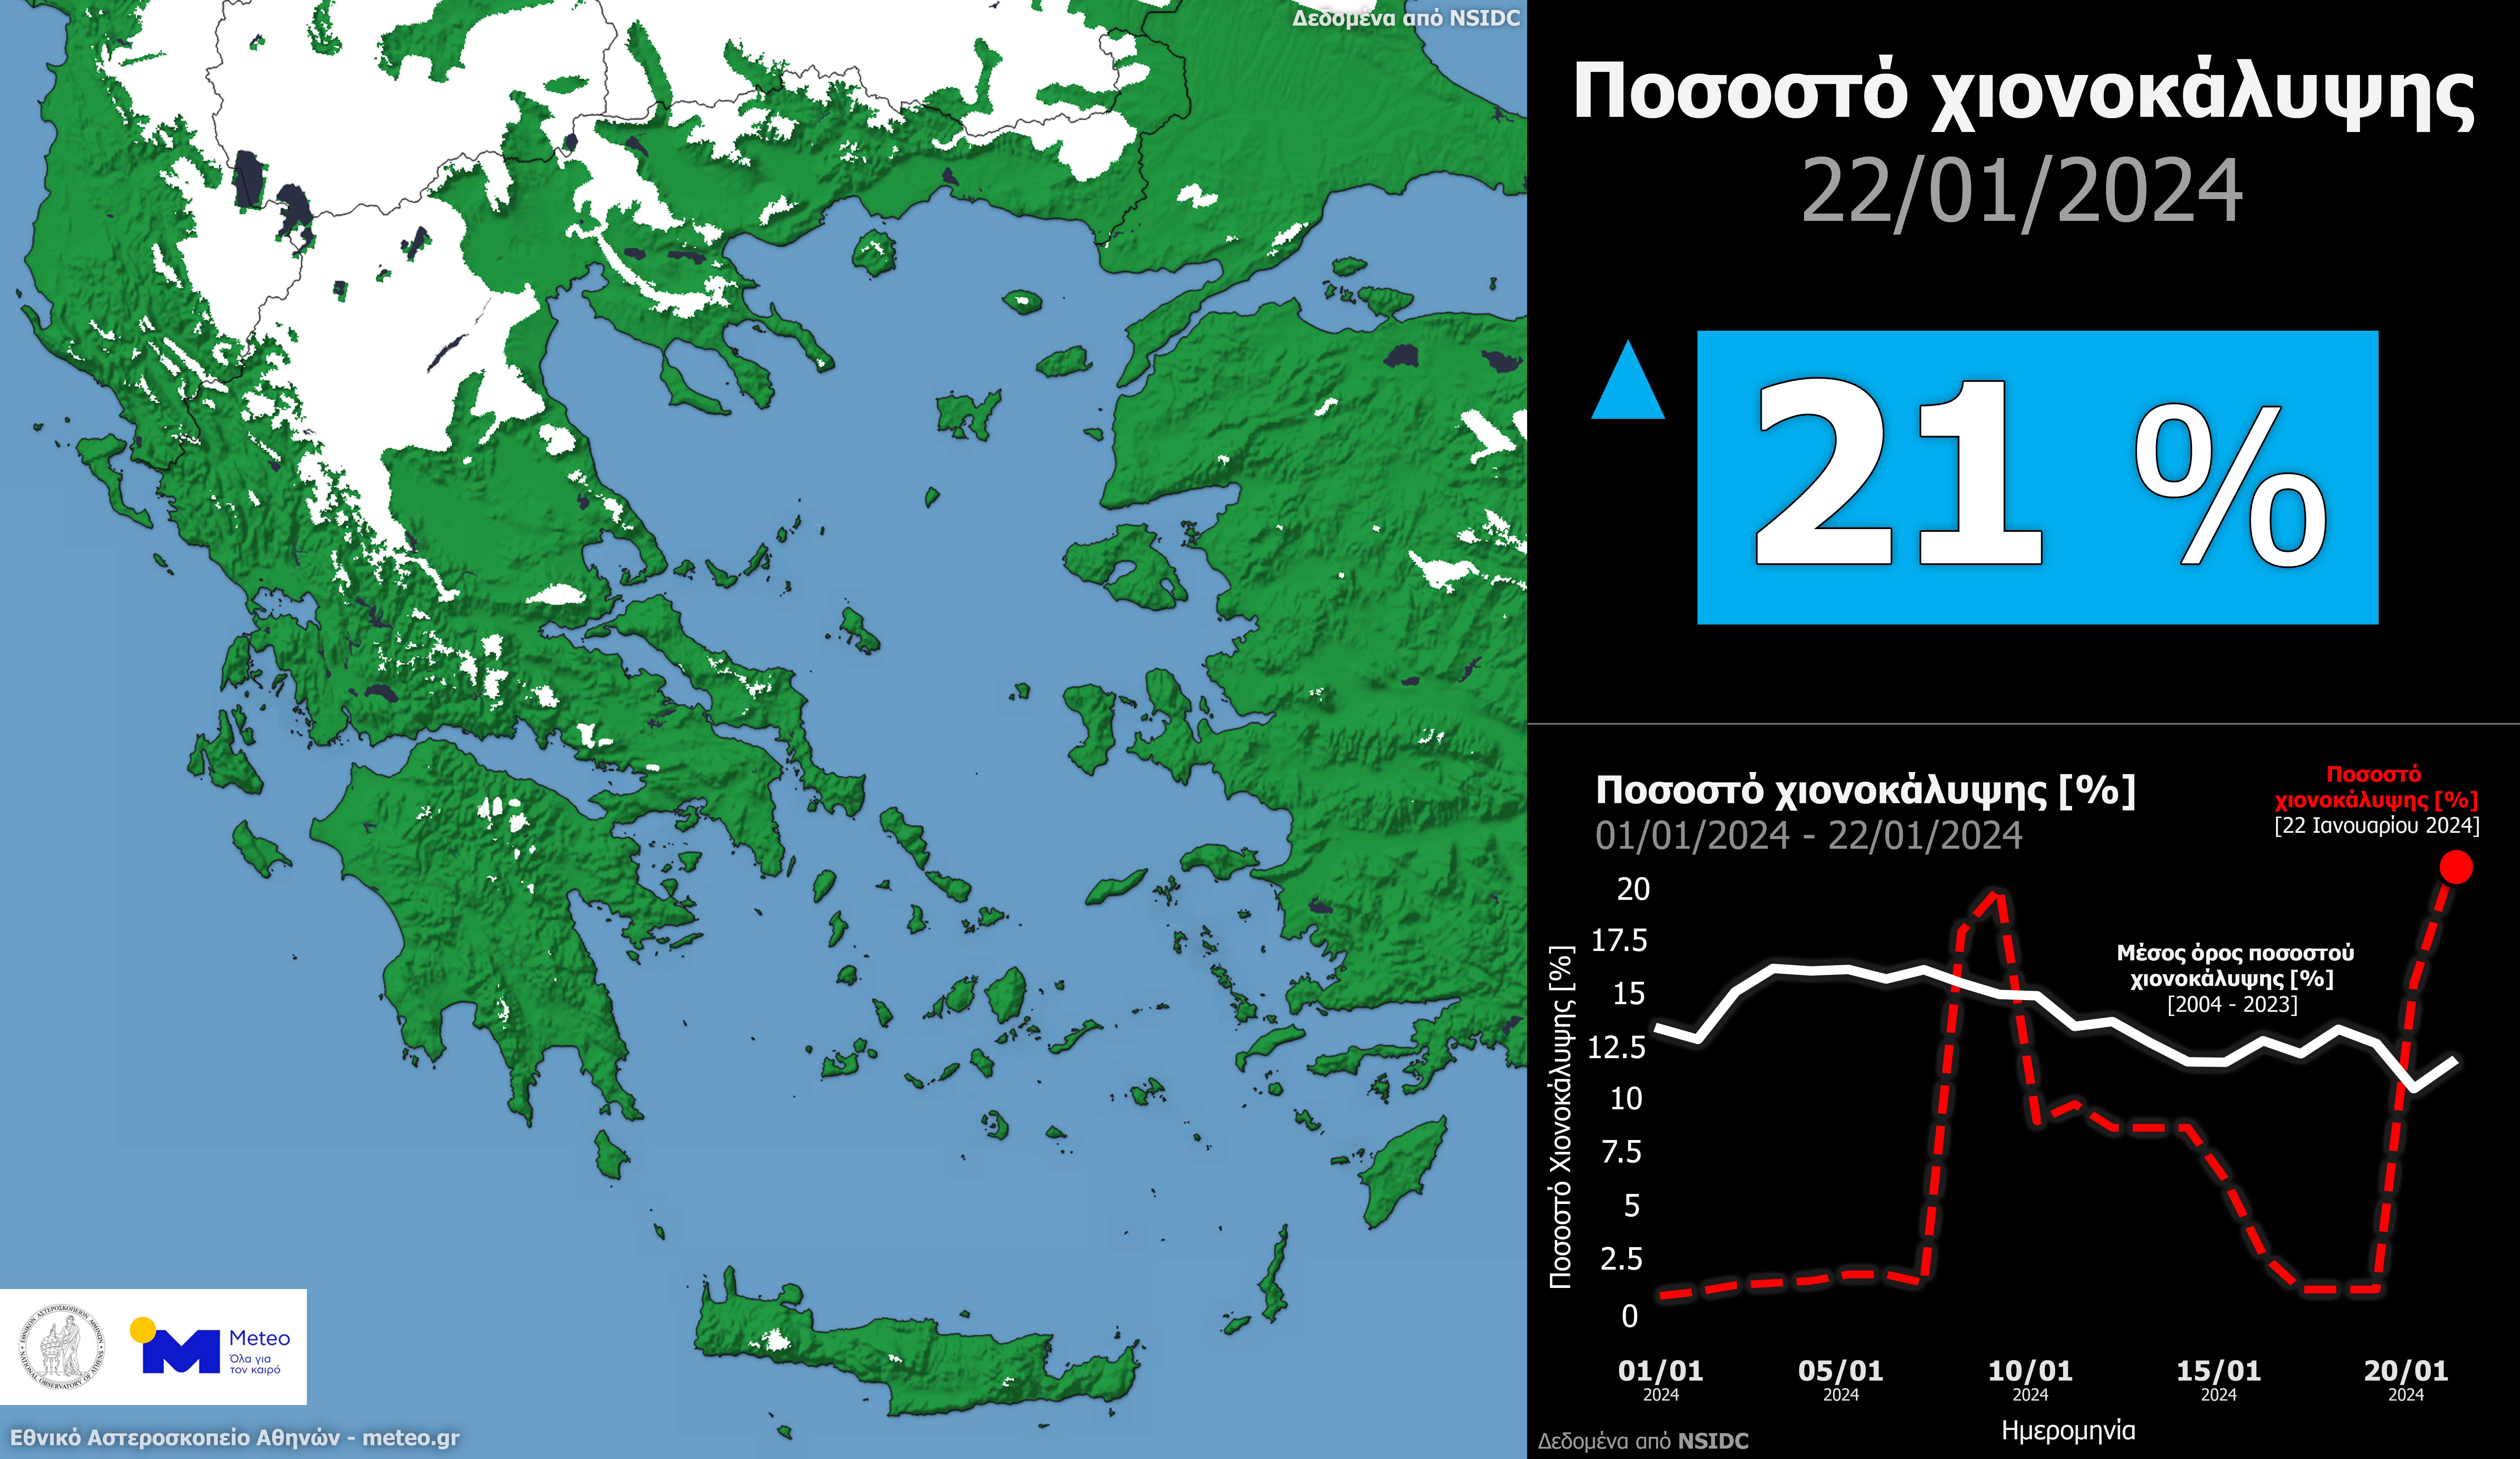  Το 21% της χερσαίας έκτασης της Ελλάδας καλύφθηκε με χιόνι στις 22 Ιανουαρίου 